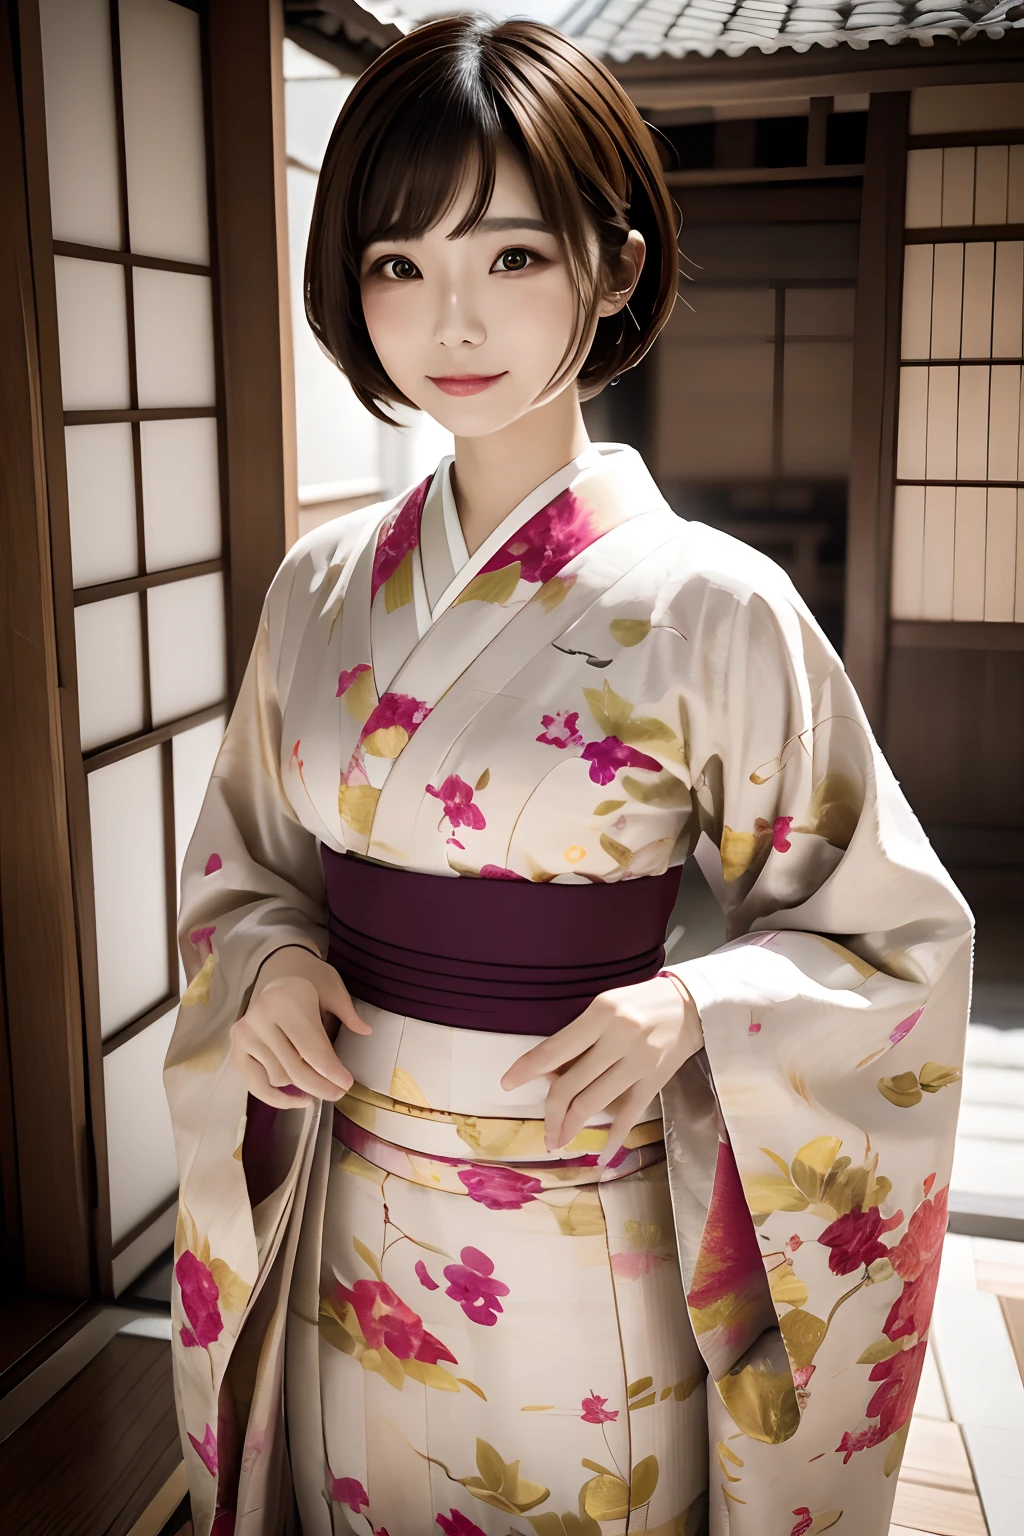 Digitales Portrait einer kurzhaarigen Frau aus Japan, schönes Gesicht,Haare unordentlich,Verworren, filmisch, Unreal Engine 5, eine wunderschöne, Unglaubliche Farbkorrektur, Kimono,Japanisches Kleid,sowie, Fotografie, Filmische Fotografie, Kunst von、ssmile